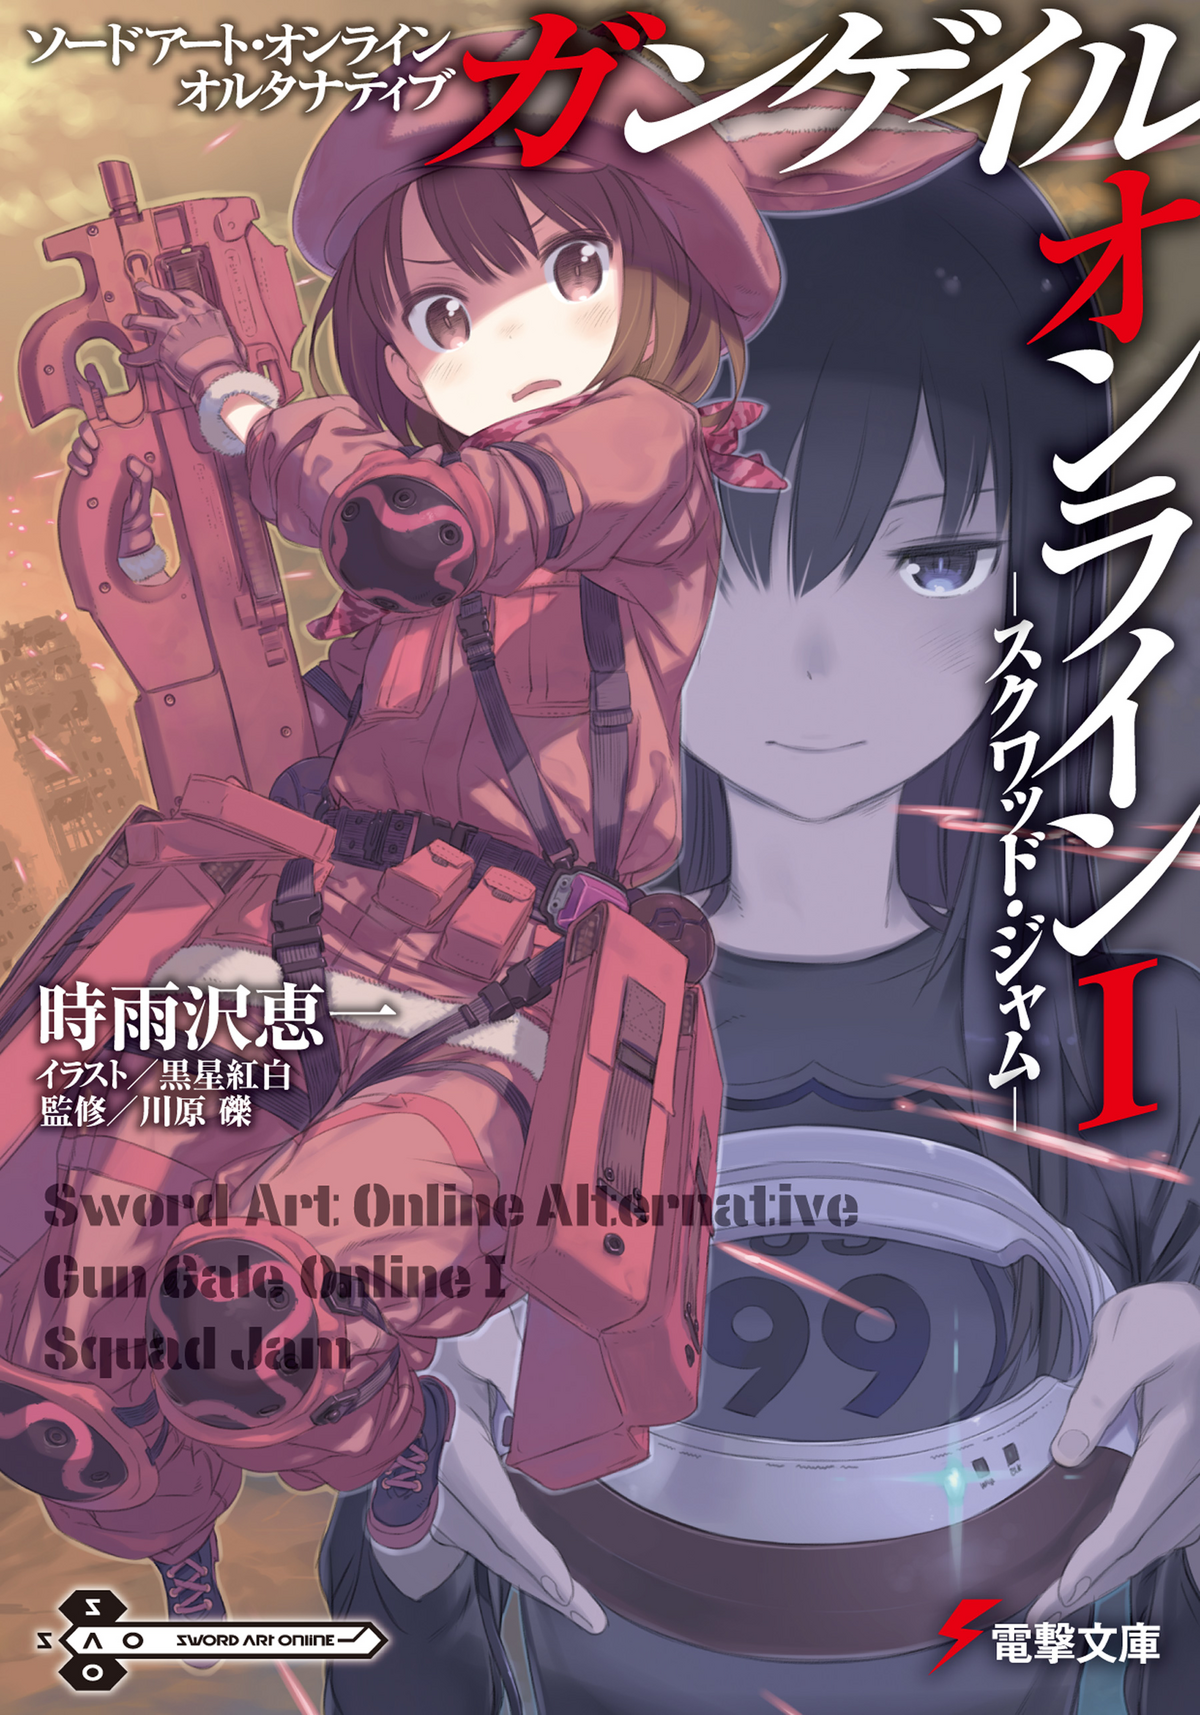 Sword Art Online Alternative: Gun Gale Online – Episode 1 - Anime Feminist